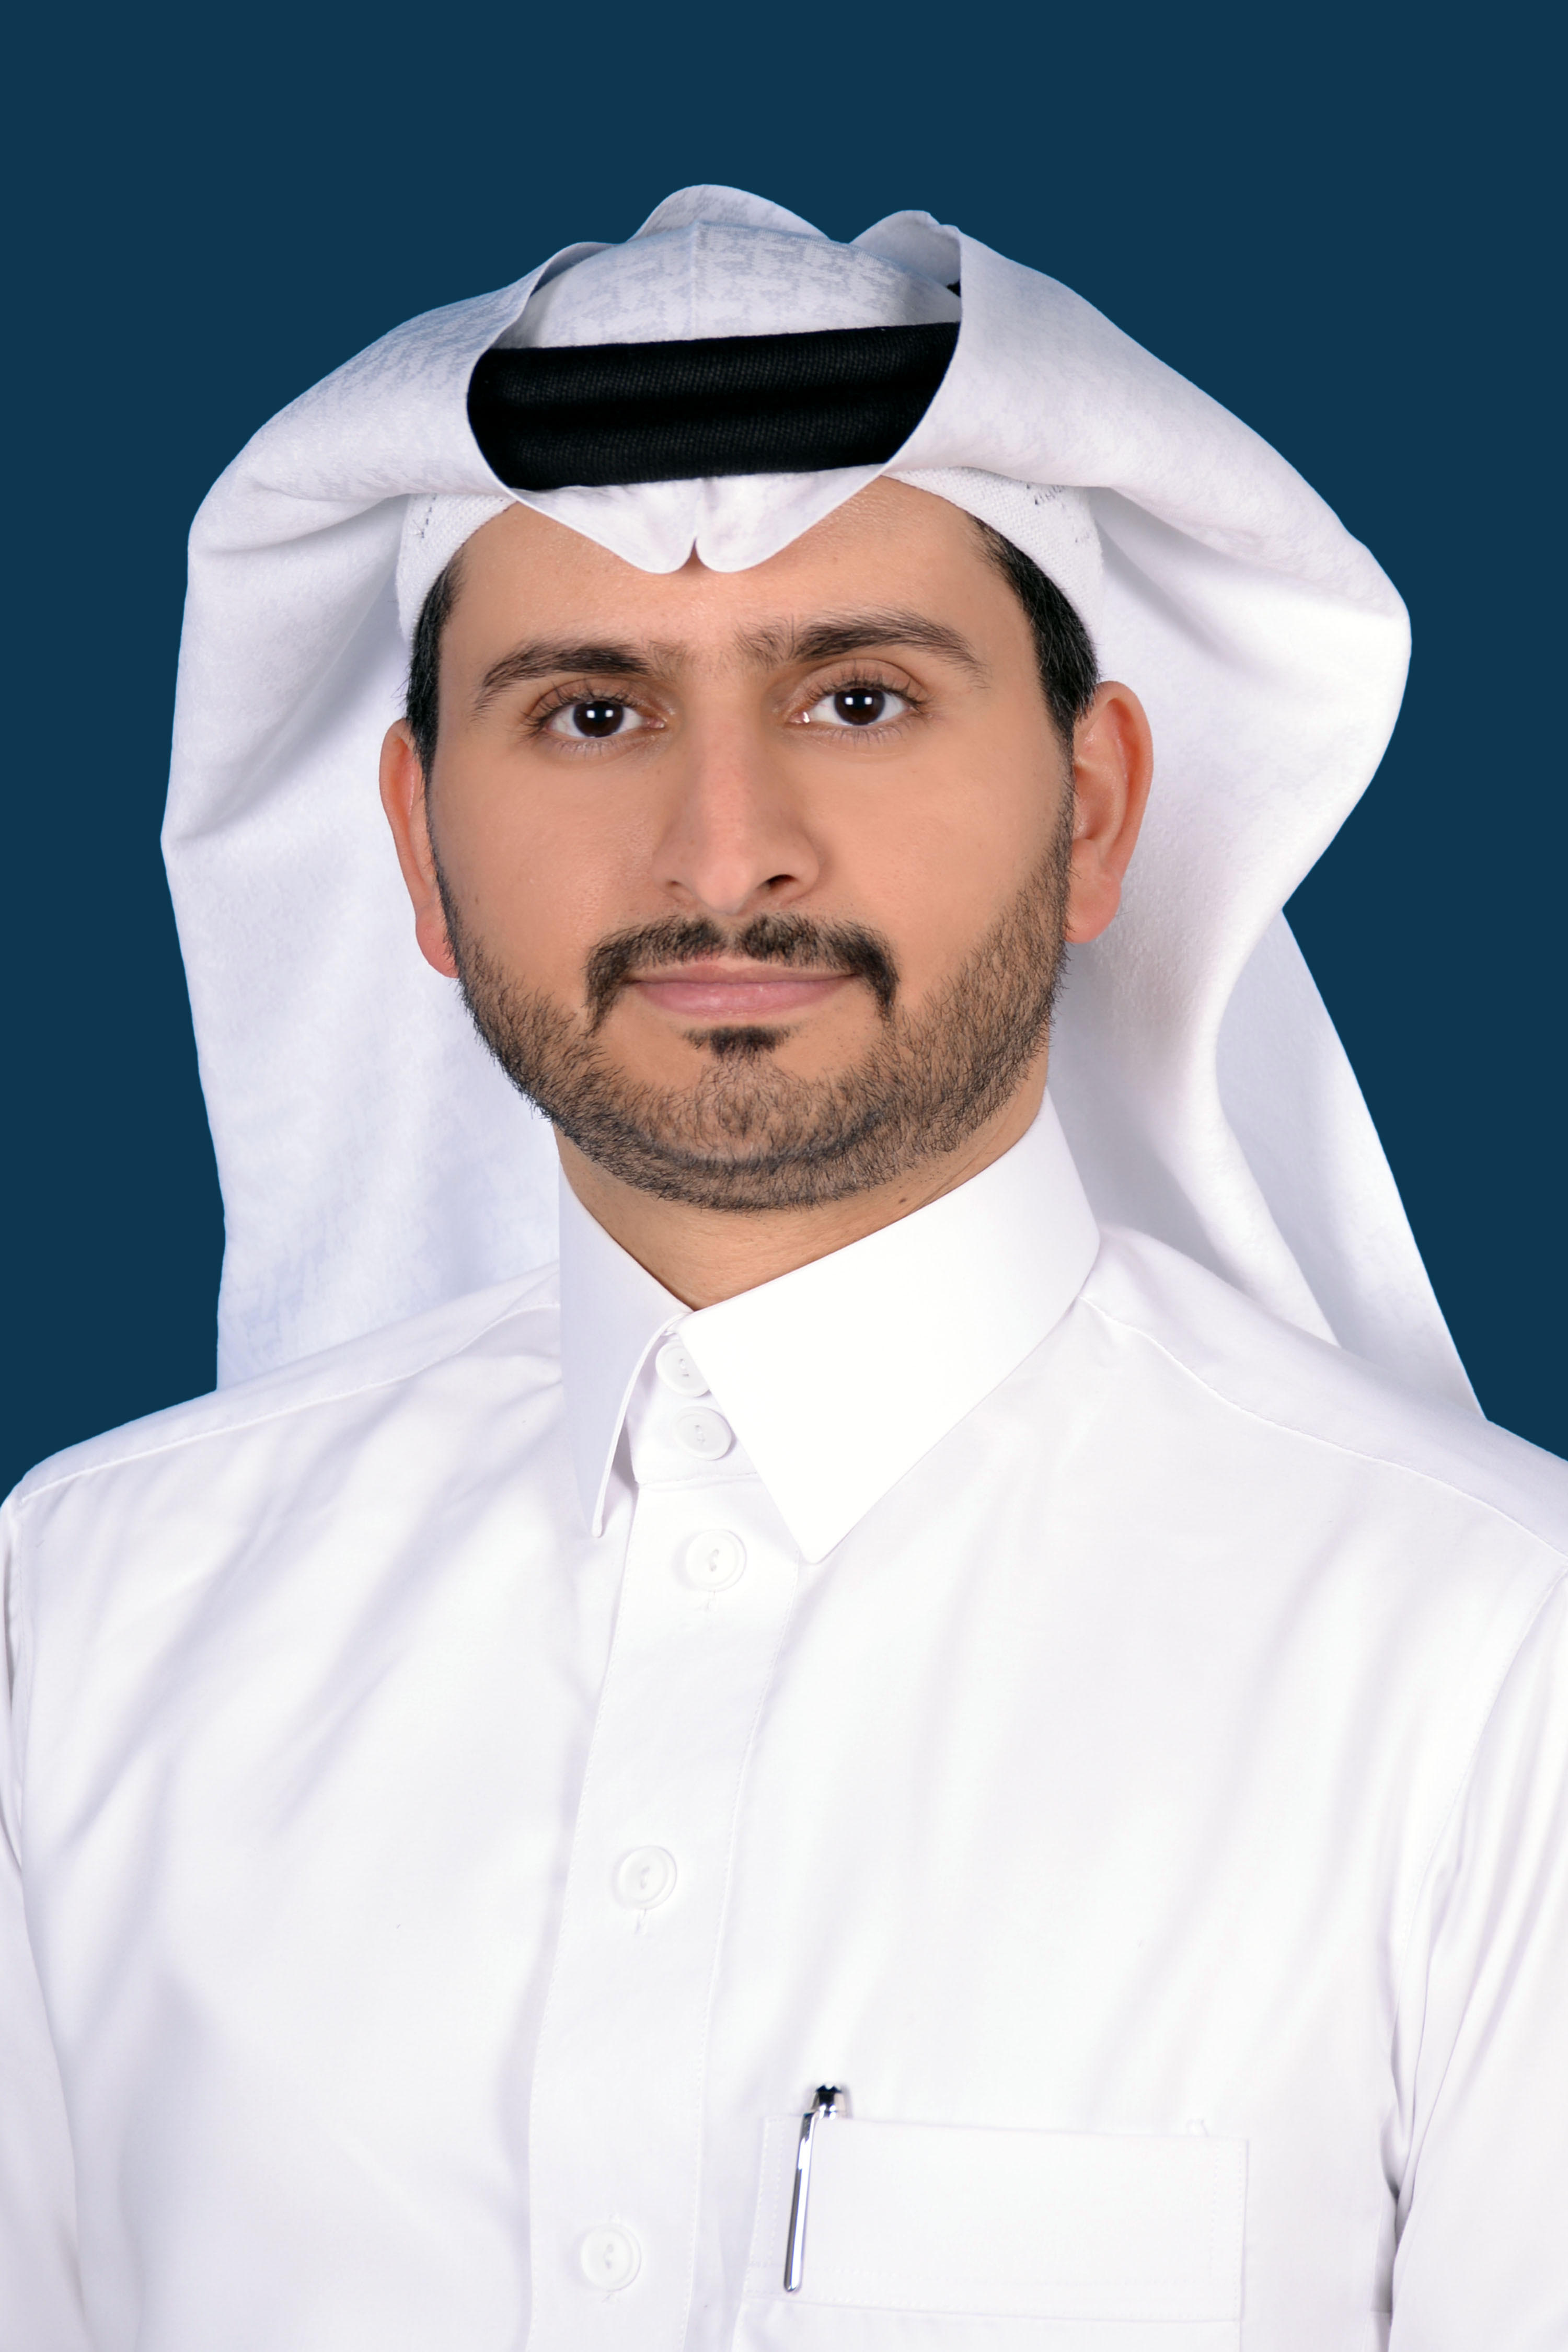 Dr. Fahad Ali Alshehri